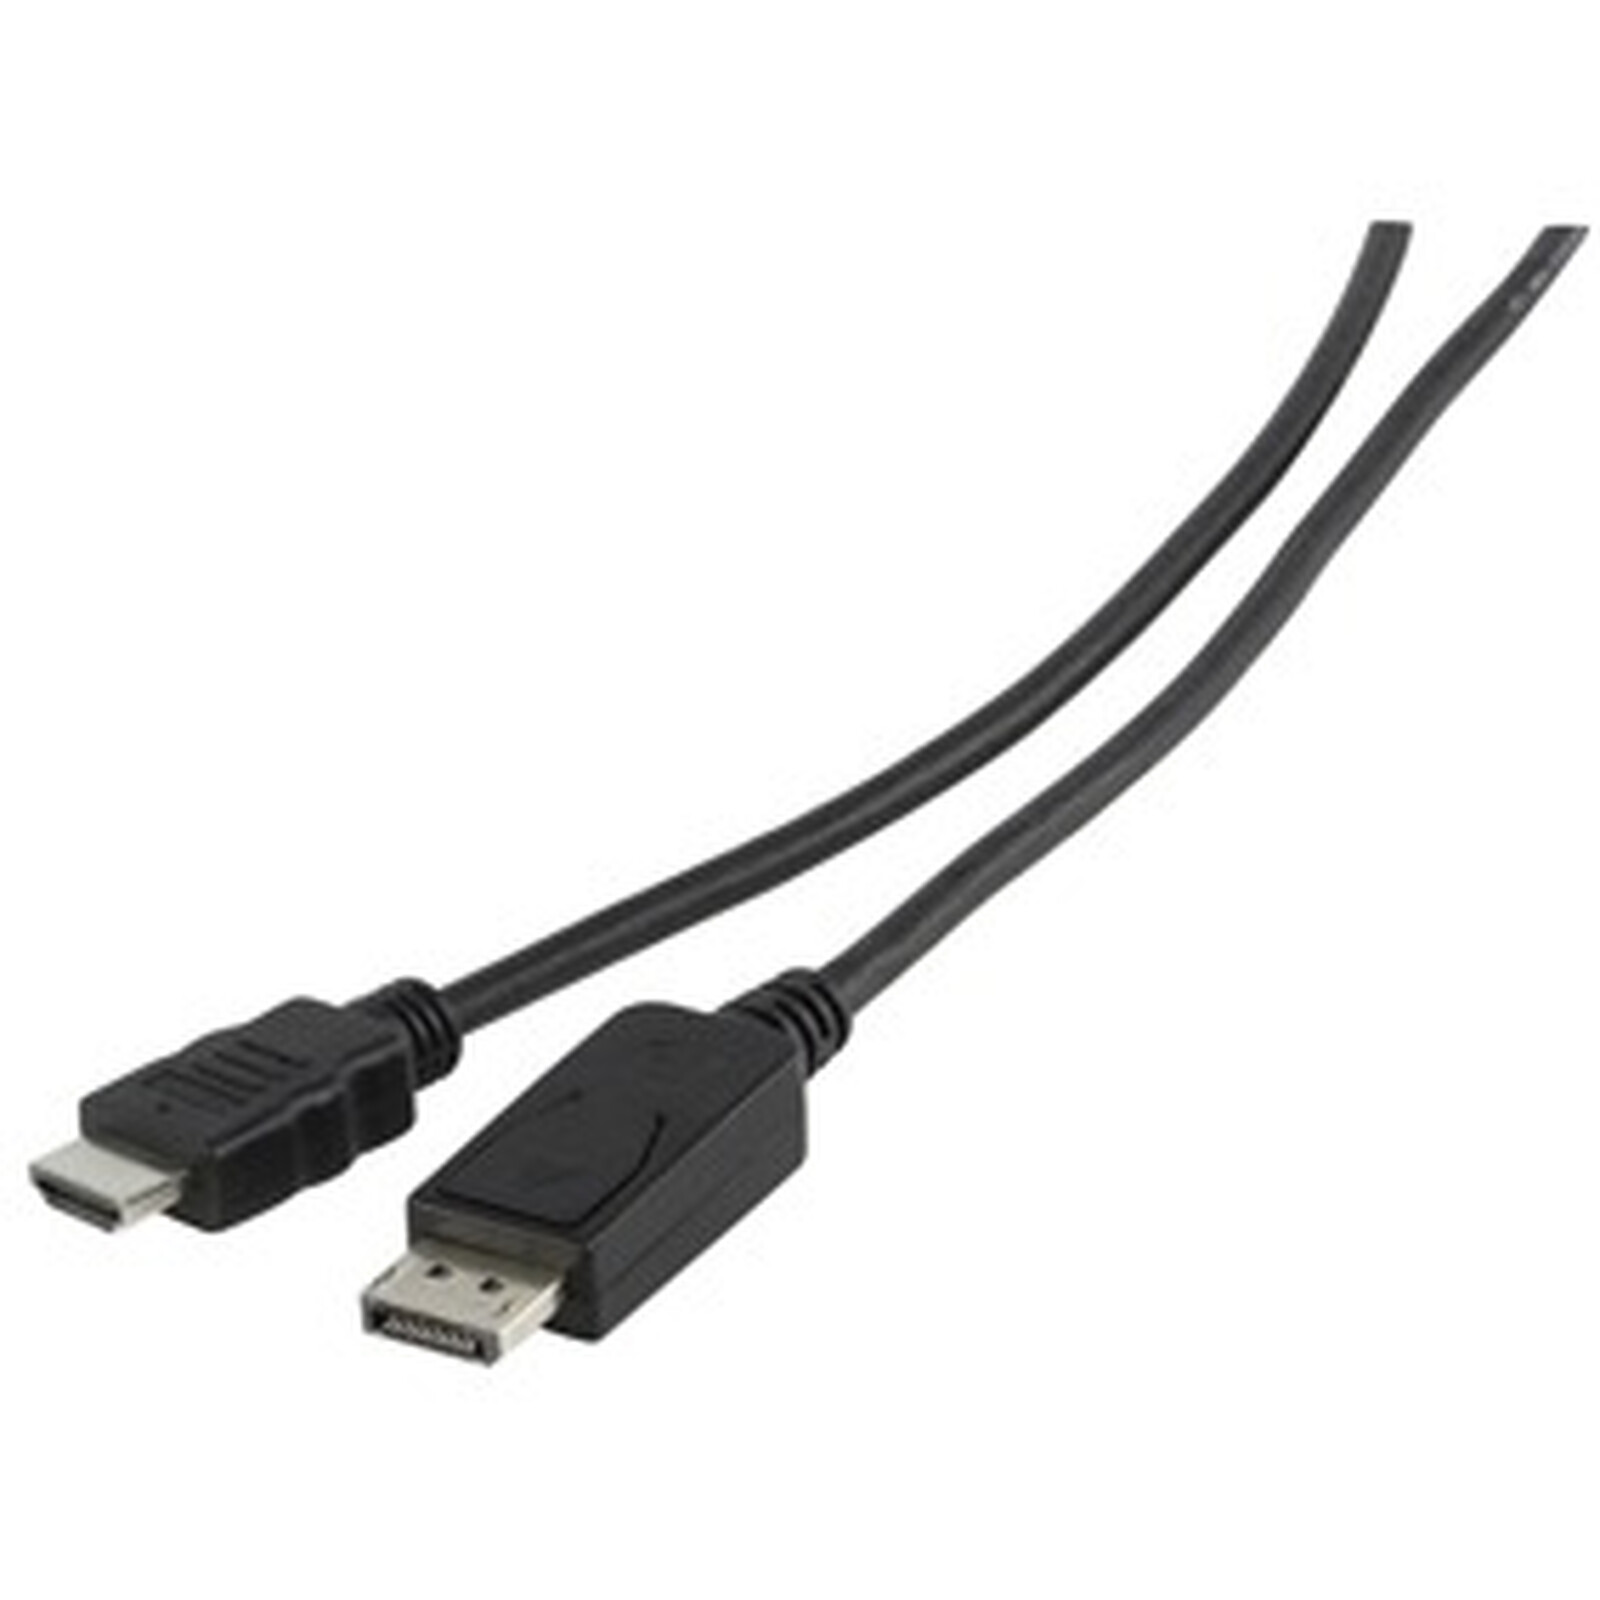 Câble DisplayPort vers HDMI 2m - 4K 30Hz - Adaptateur DP vers HDMI -  Convertisseur pour Moniteur DP 1.2 à HDMI - Connecteur DP à Verrouillage -  Cordon